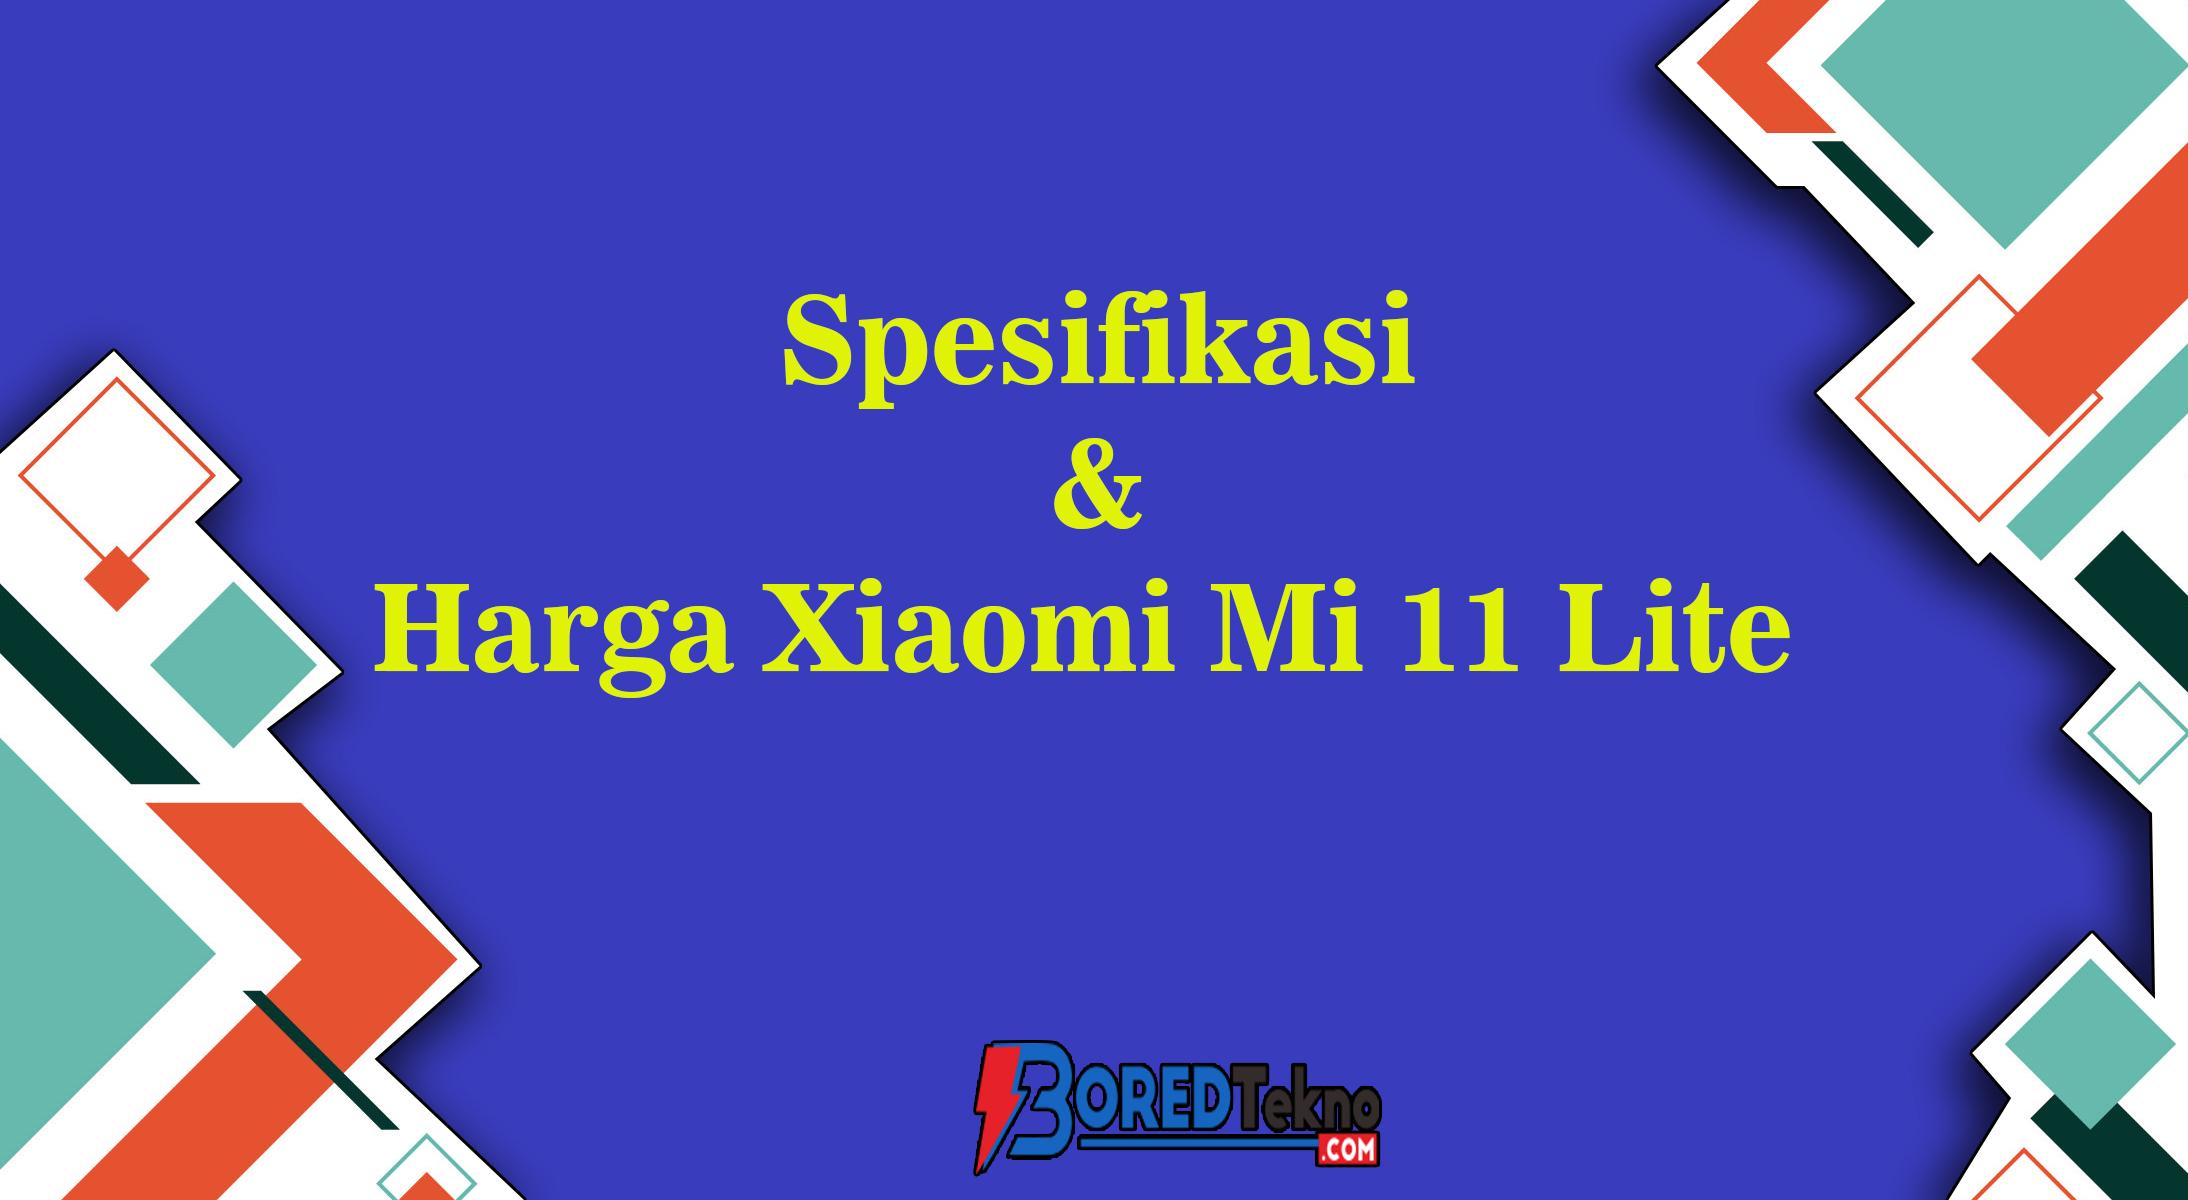 Spesifikasi & Harga Xiaomi Mi 11 Lite